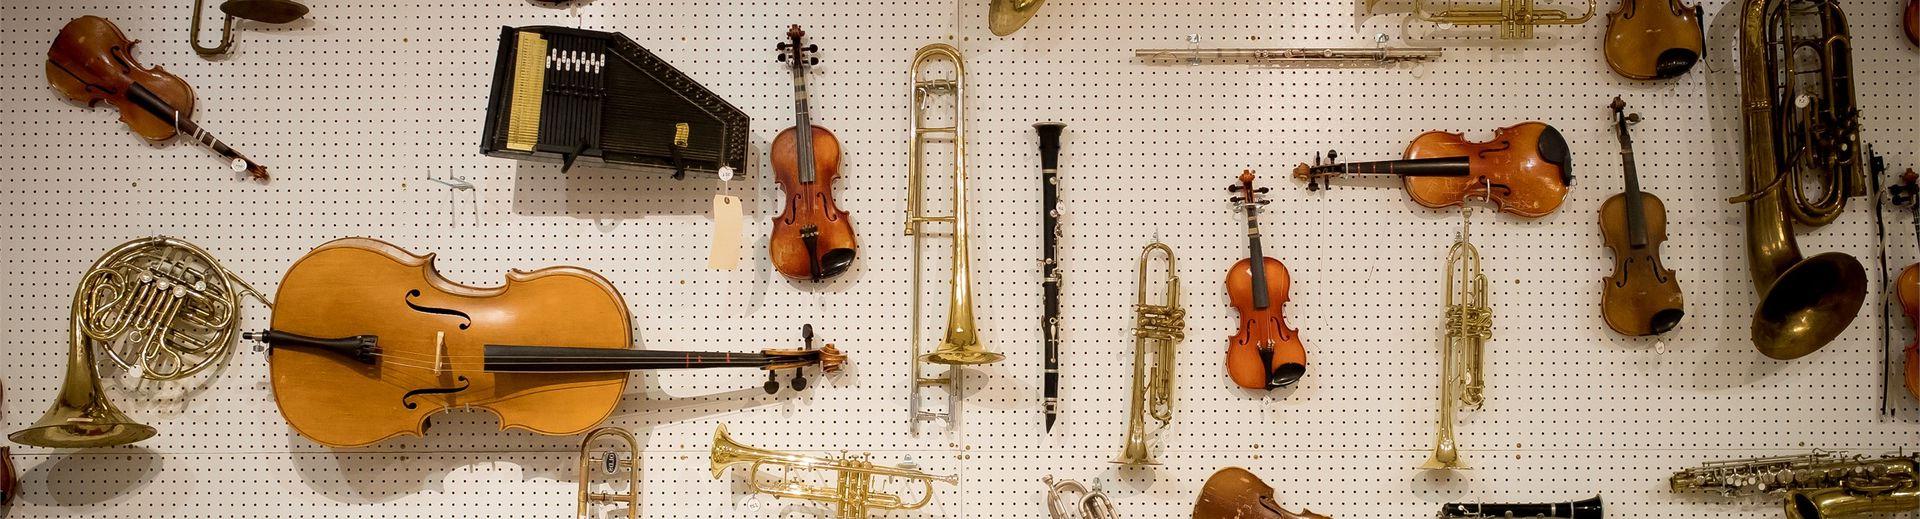 许多不同的乐器挂在钉板墙上.